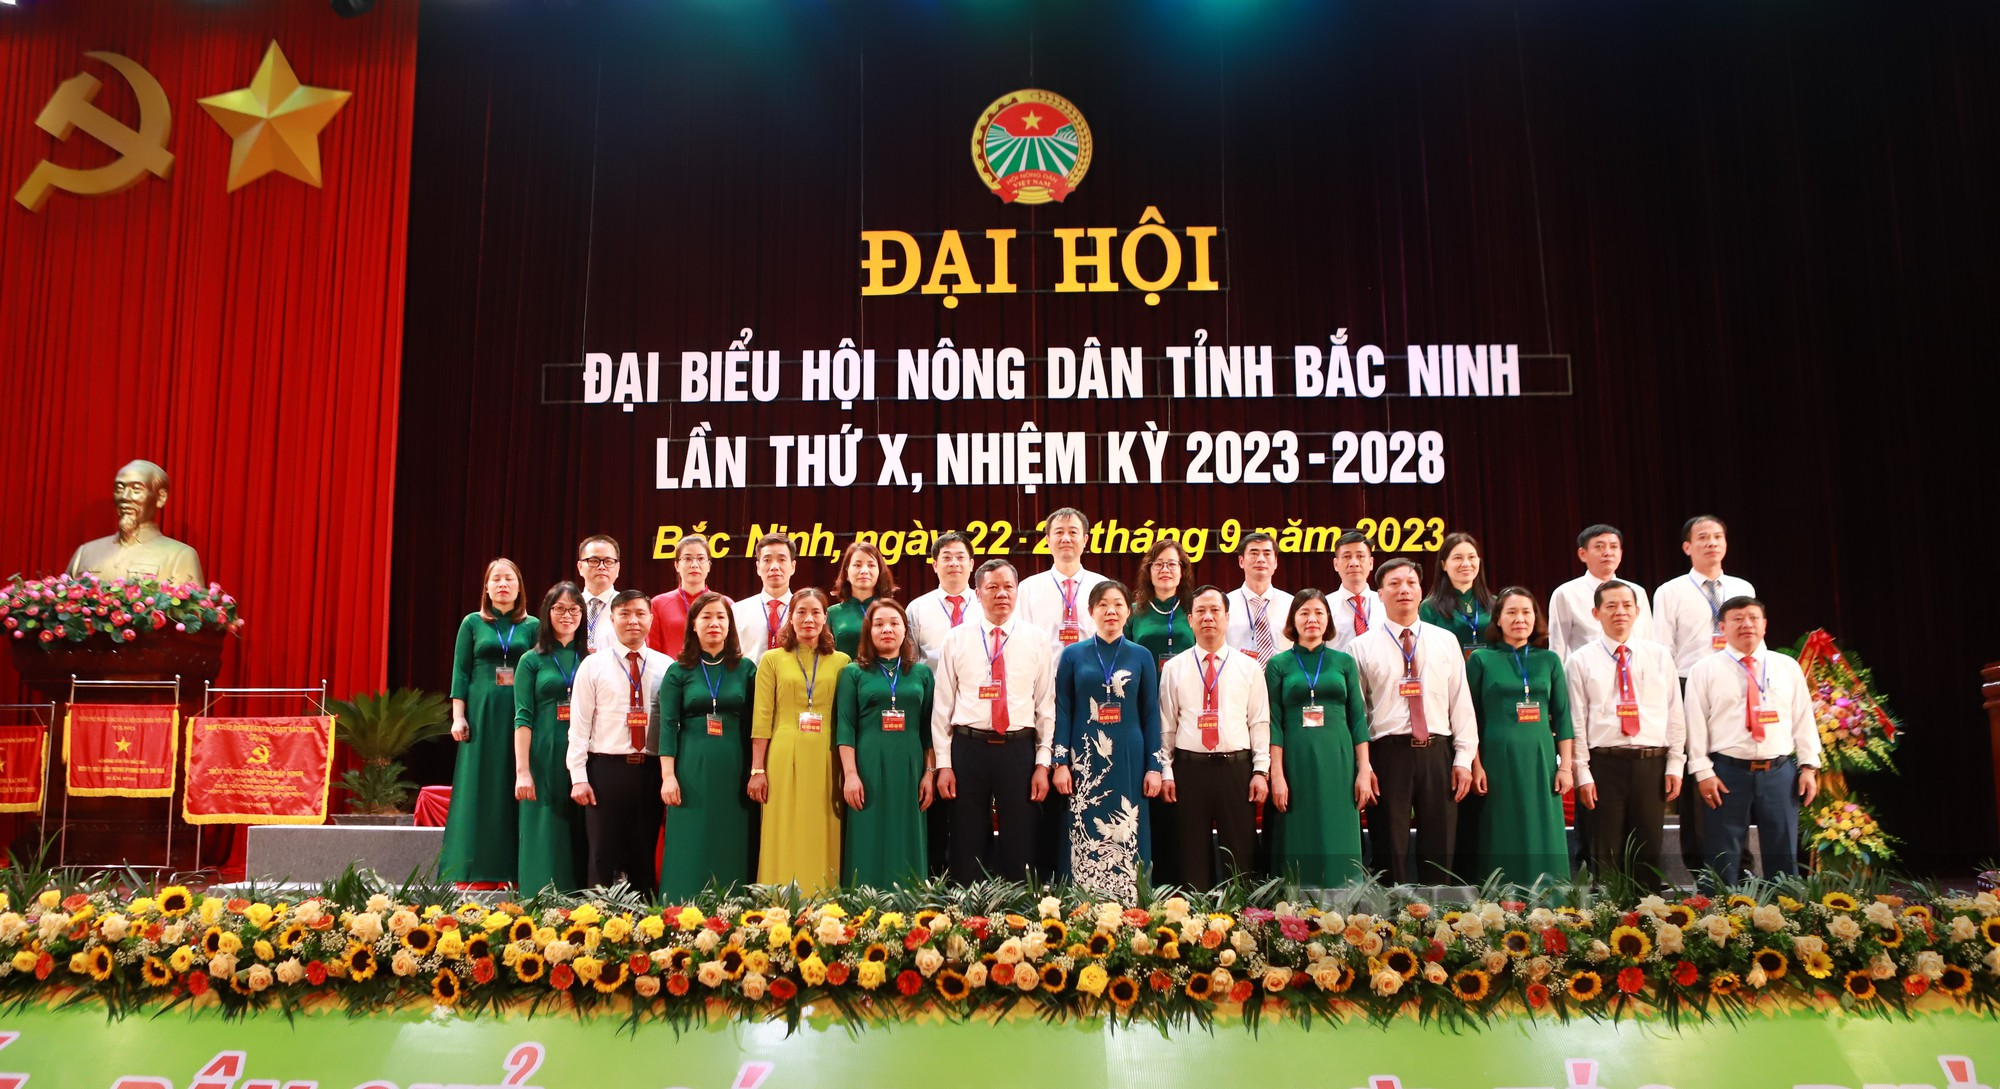 Phó chủ tịch Hội NDVN Nguyễn Xuân Định gợi mở 5 vấn đề tại Đại hội đại biểu Hội Nông dân tỉnh Bắc Ninh - Ảnh 7.